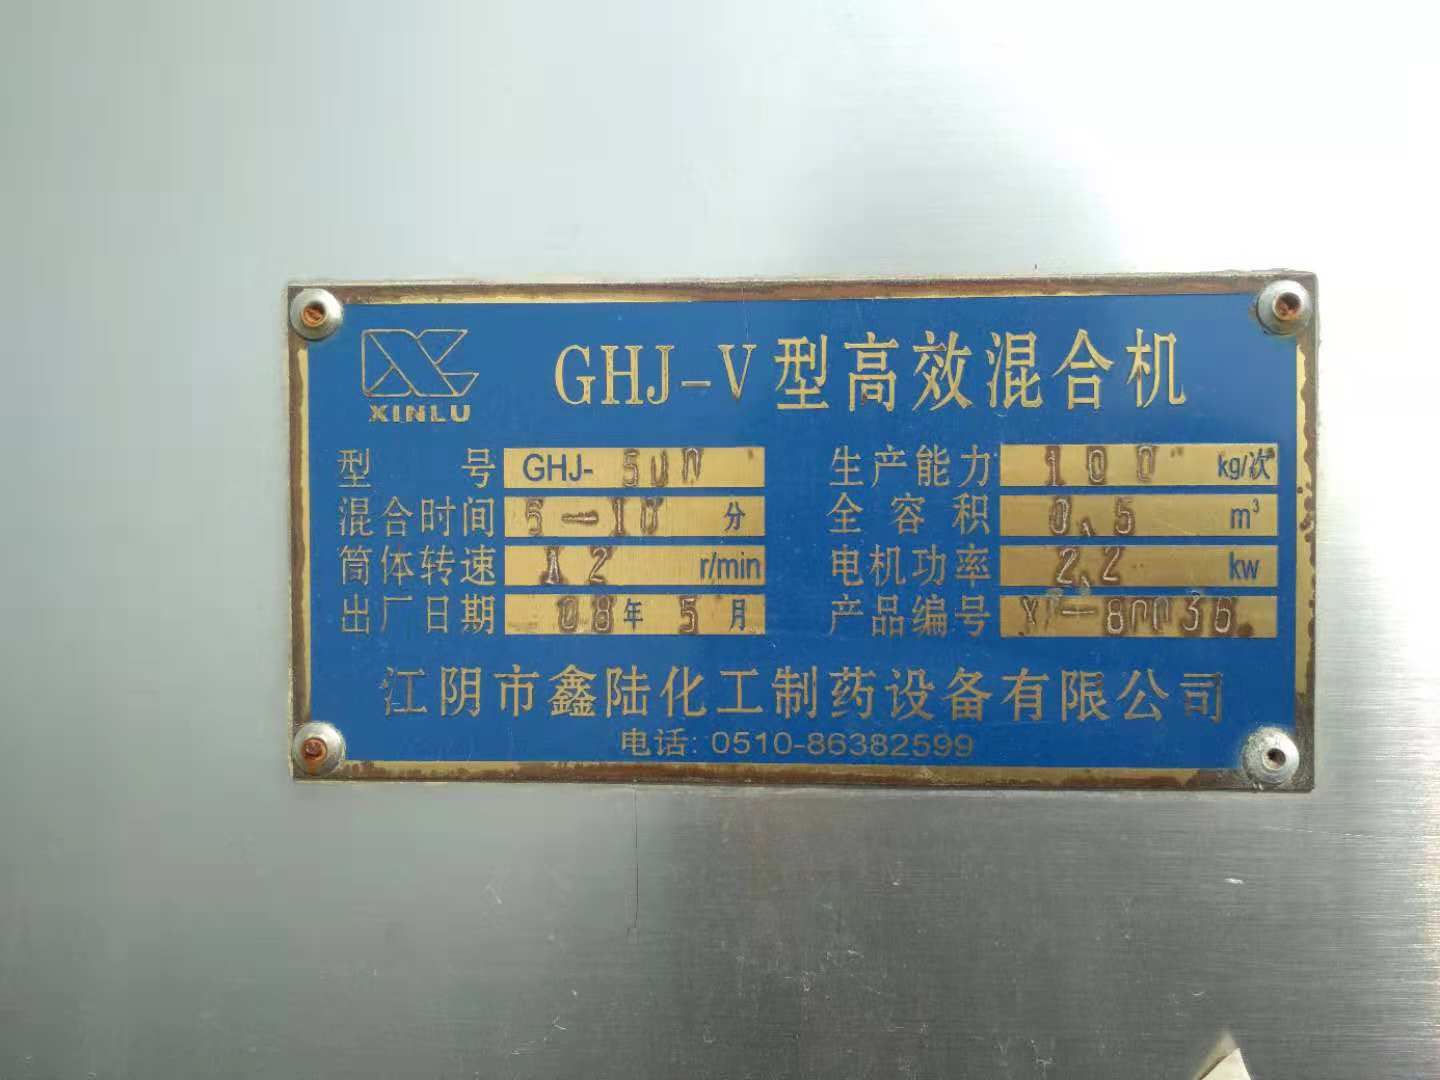 CHJ-V型高效混合机批发